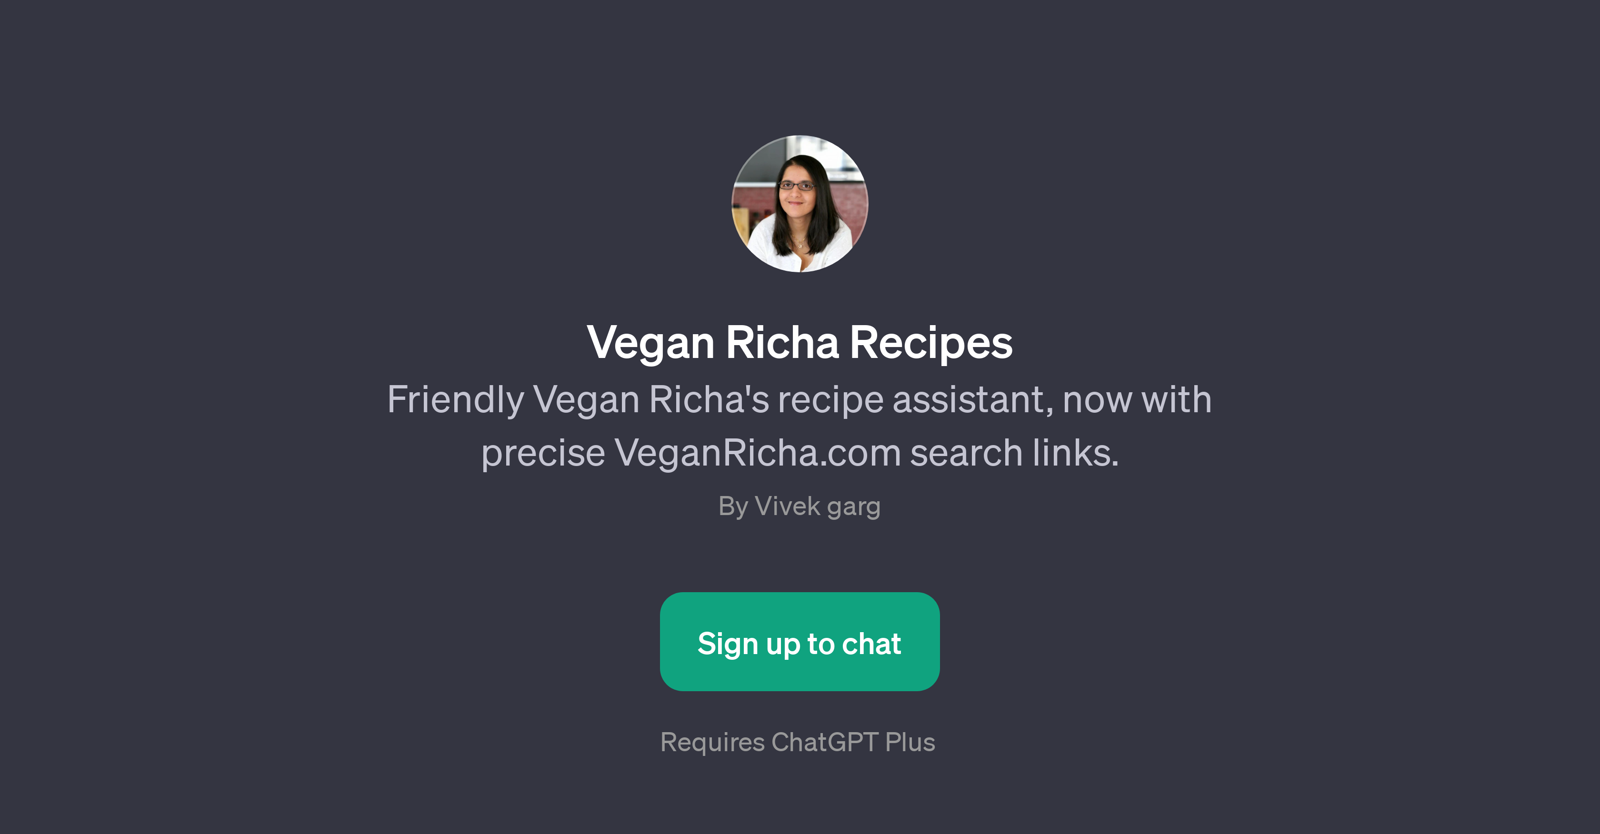 Vegan Richa Recipes GPT website